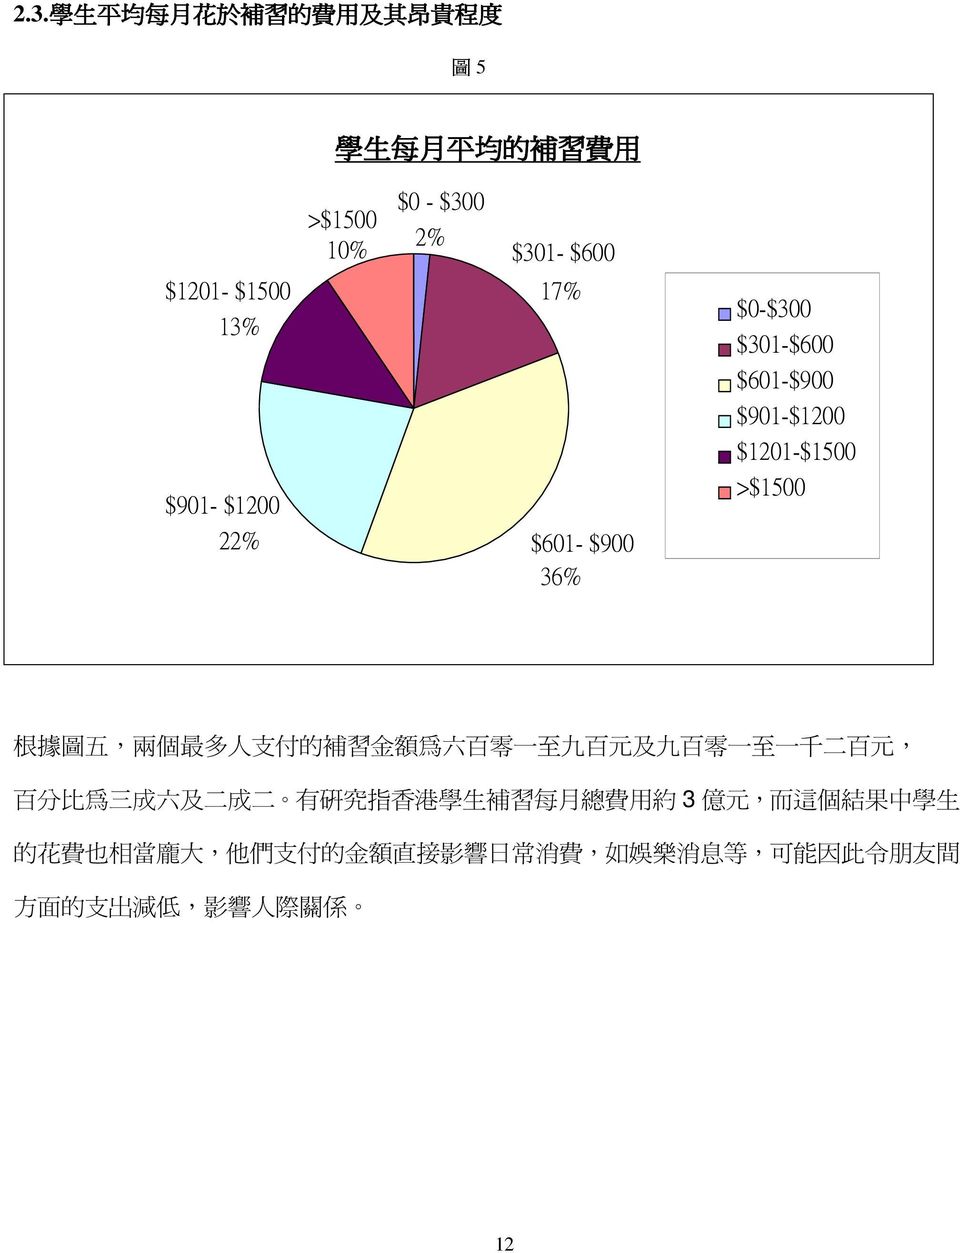 付 的 補 習 金 額 為 六 百 零 一 至 九 百 元 及 九 百 零 一 至 一 千 二 百 元, 百 分 比 為 三 成 六 及 二 成 二 有 研 究 指 香 港 學 生 補 習 每 月 總 費 用 約 3 億 元, 而 這